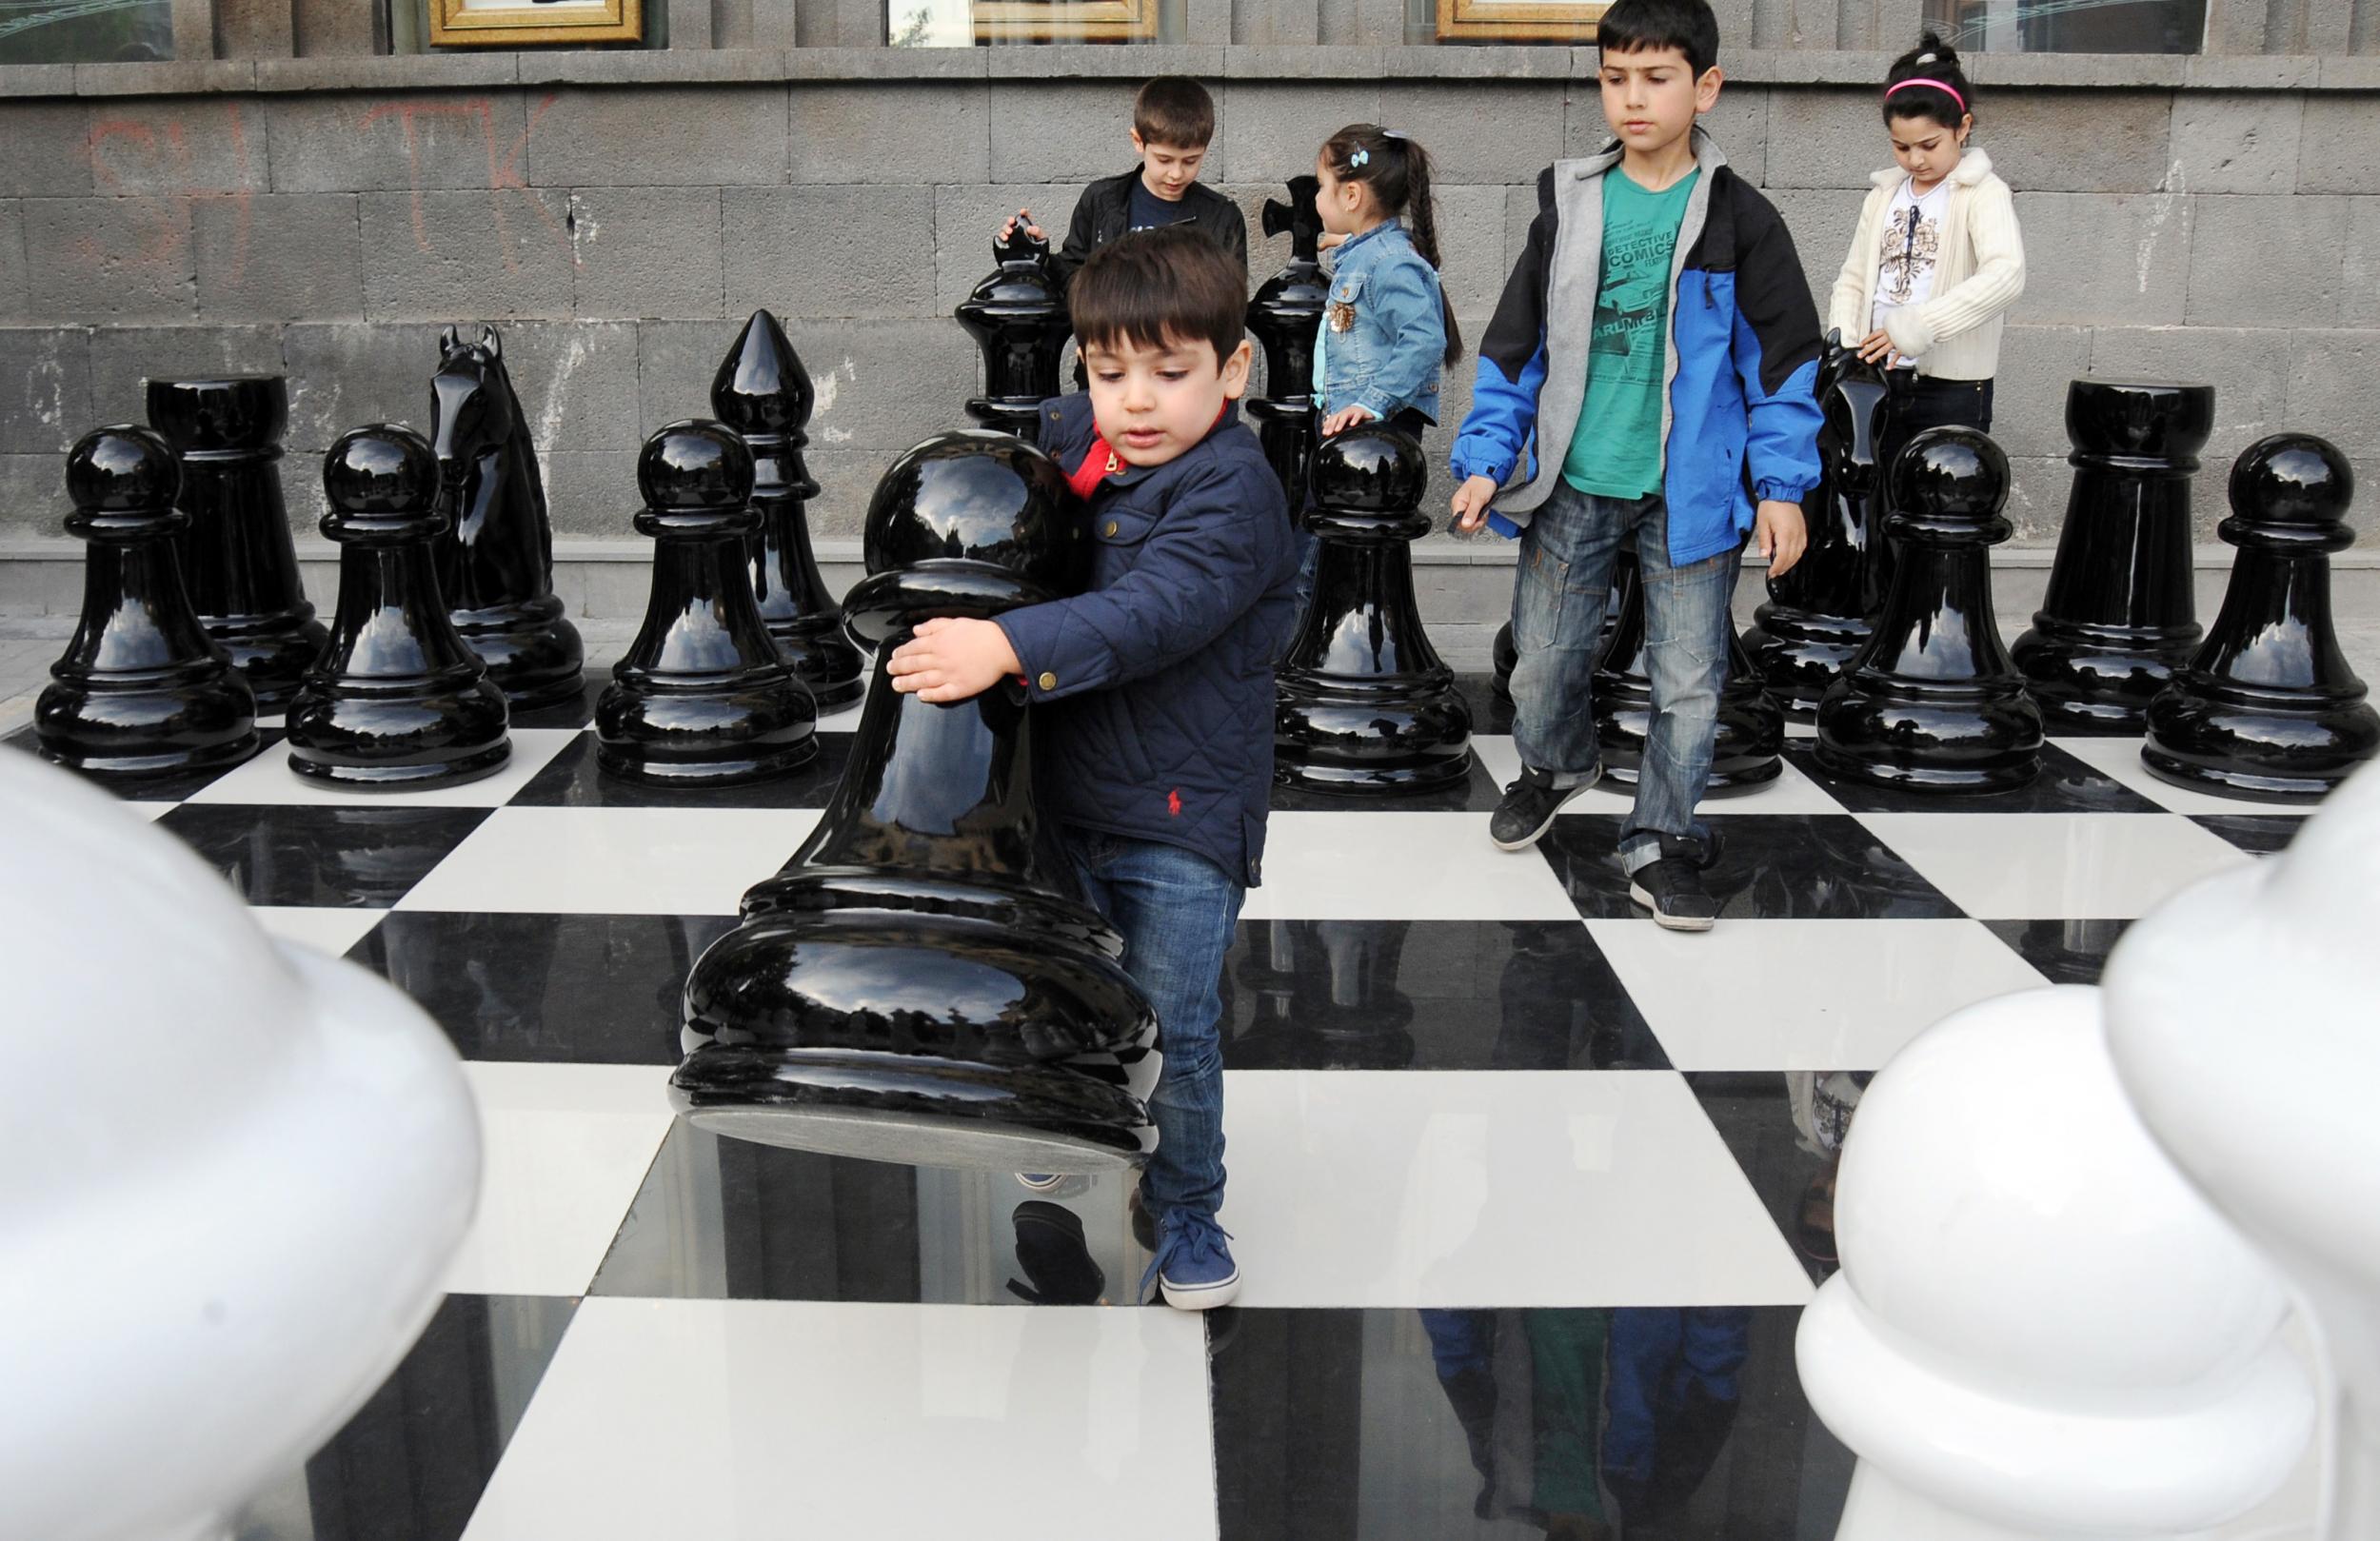 Children play jumbo chess in Yerevan, Armenia